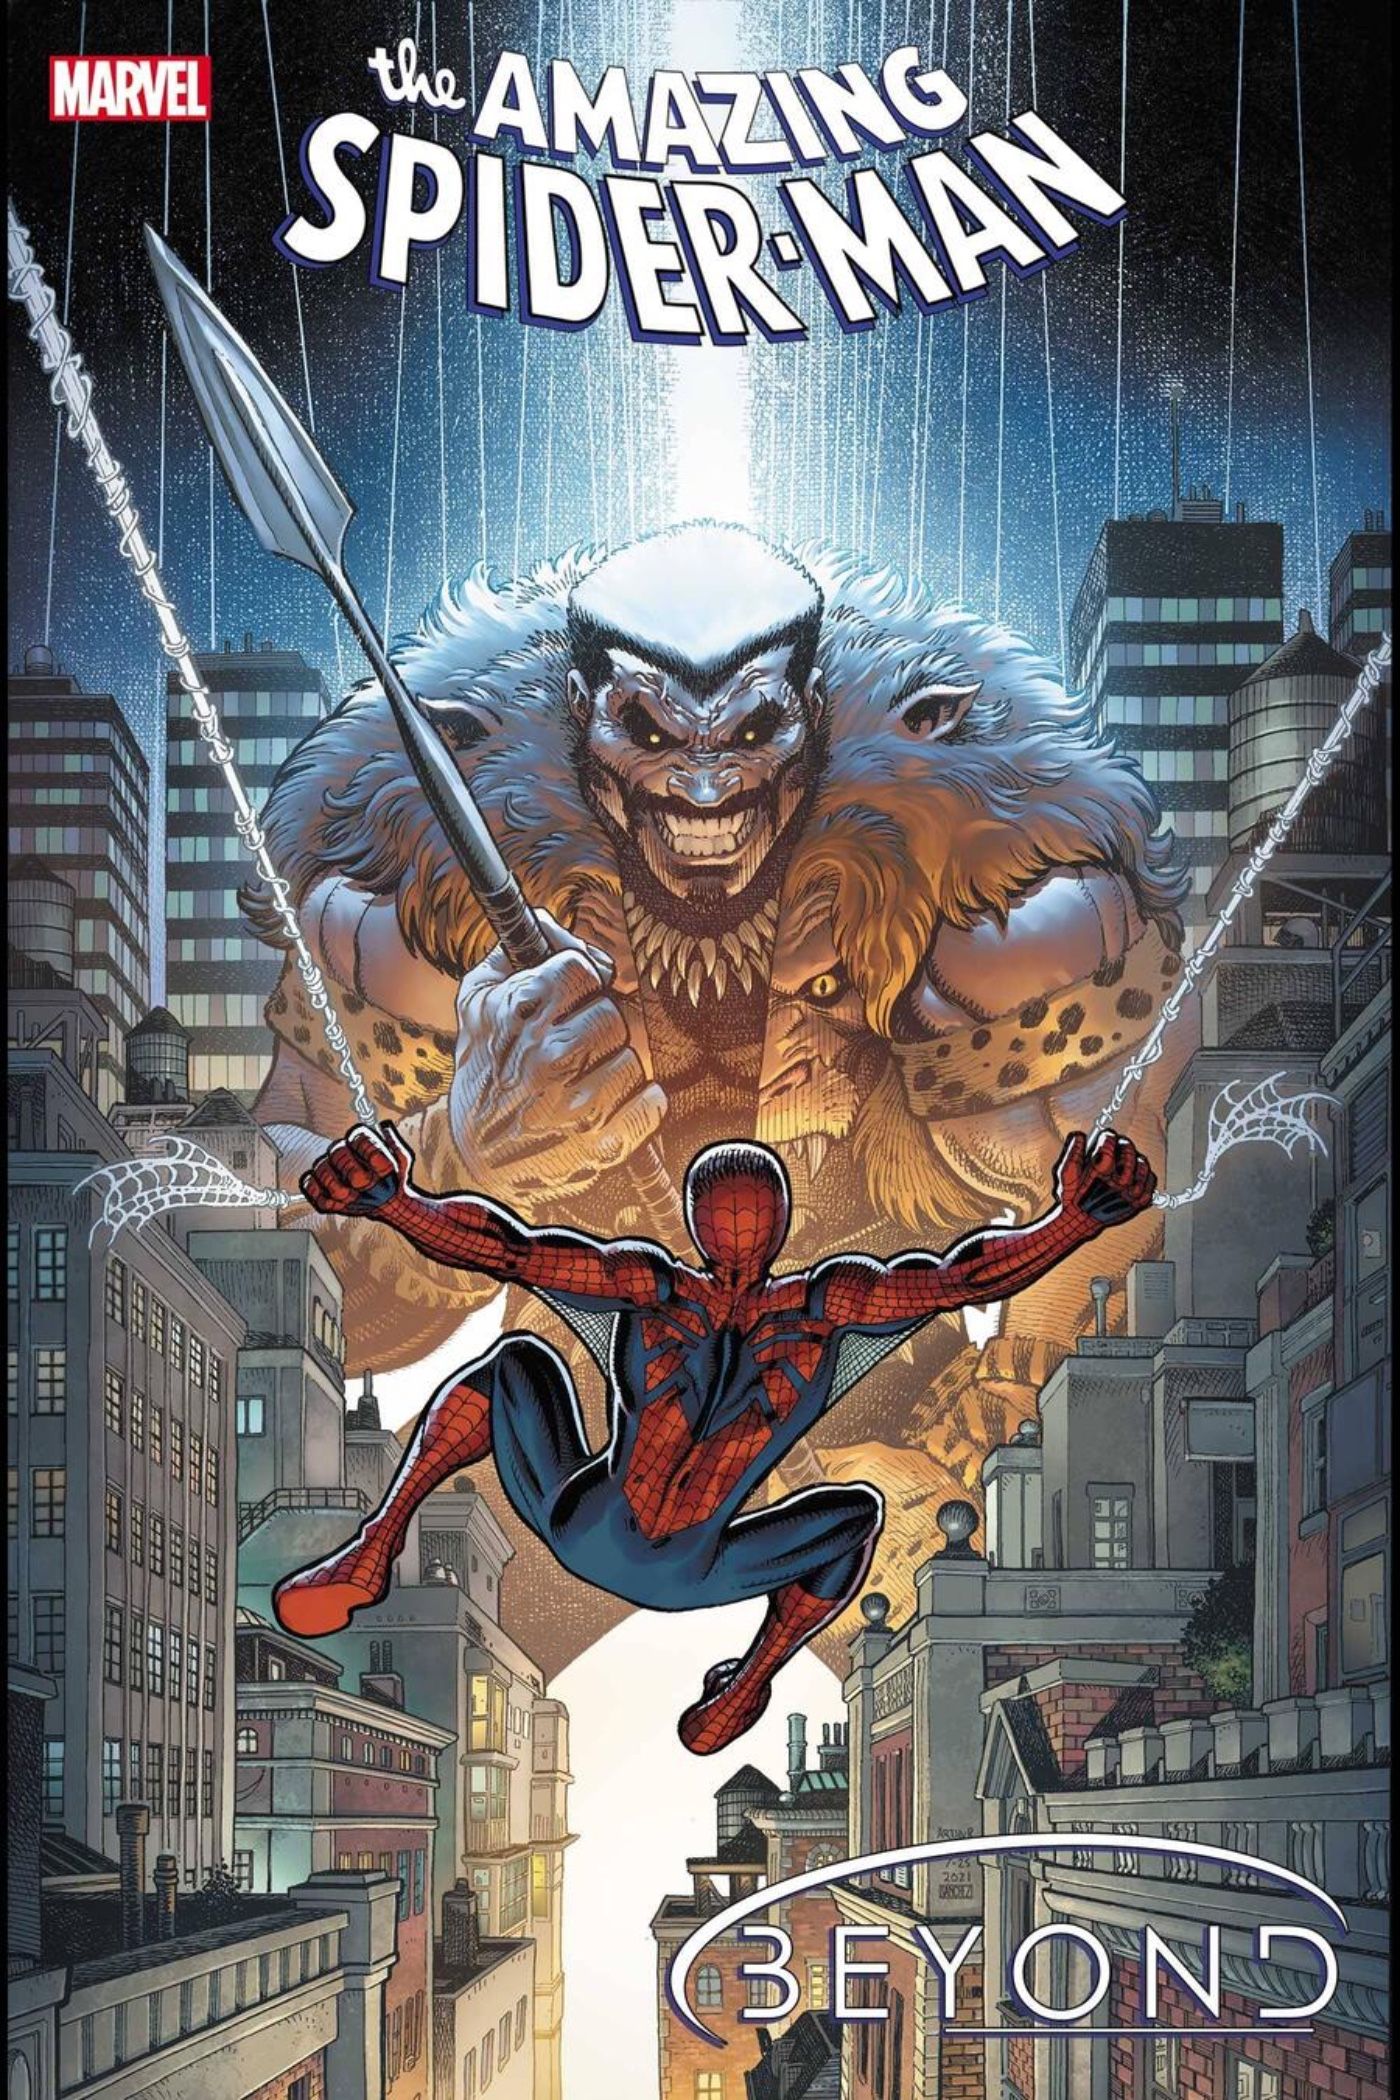 Kraven the Hunter stalks the Ben Reilly Spider-Man